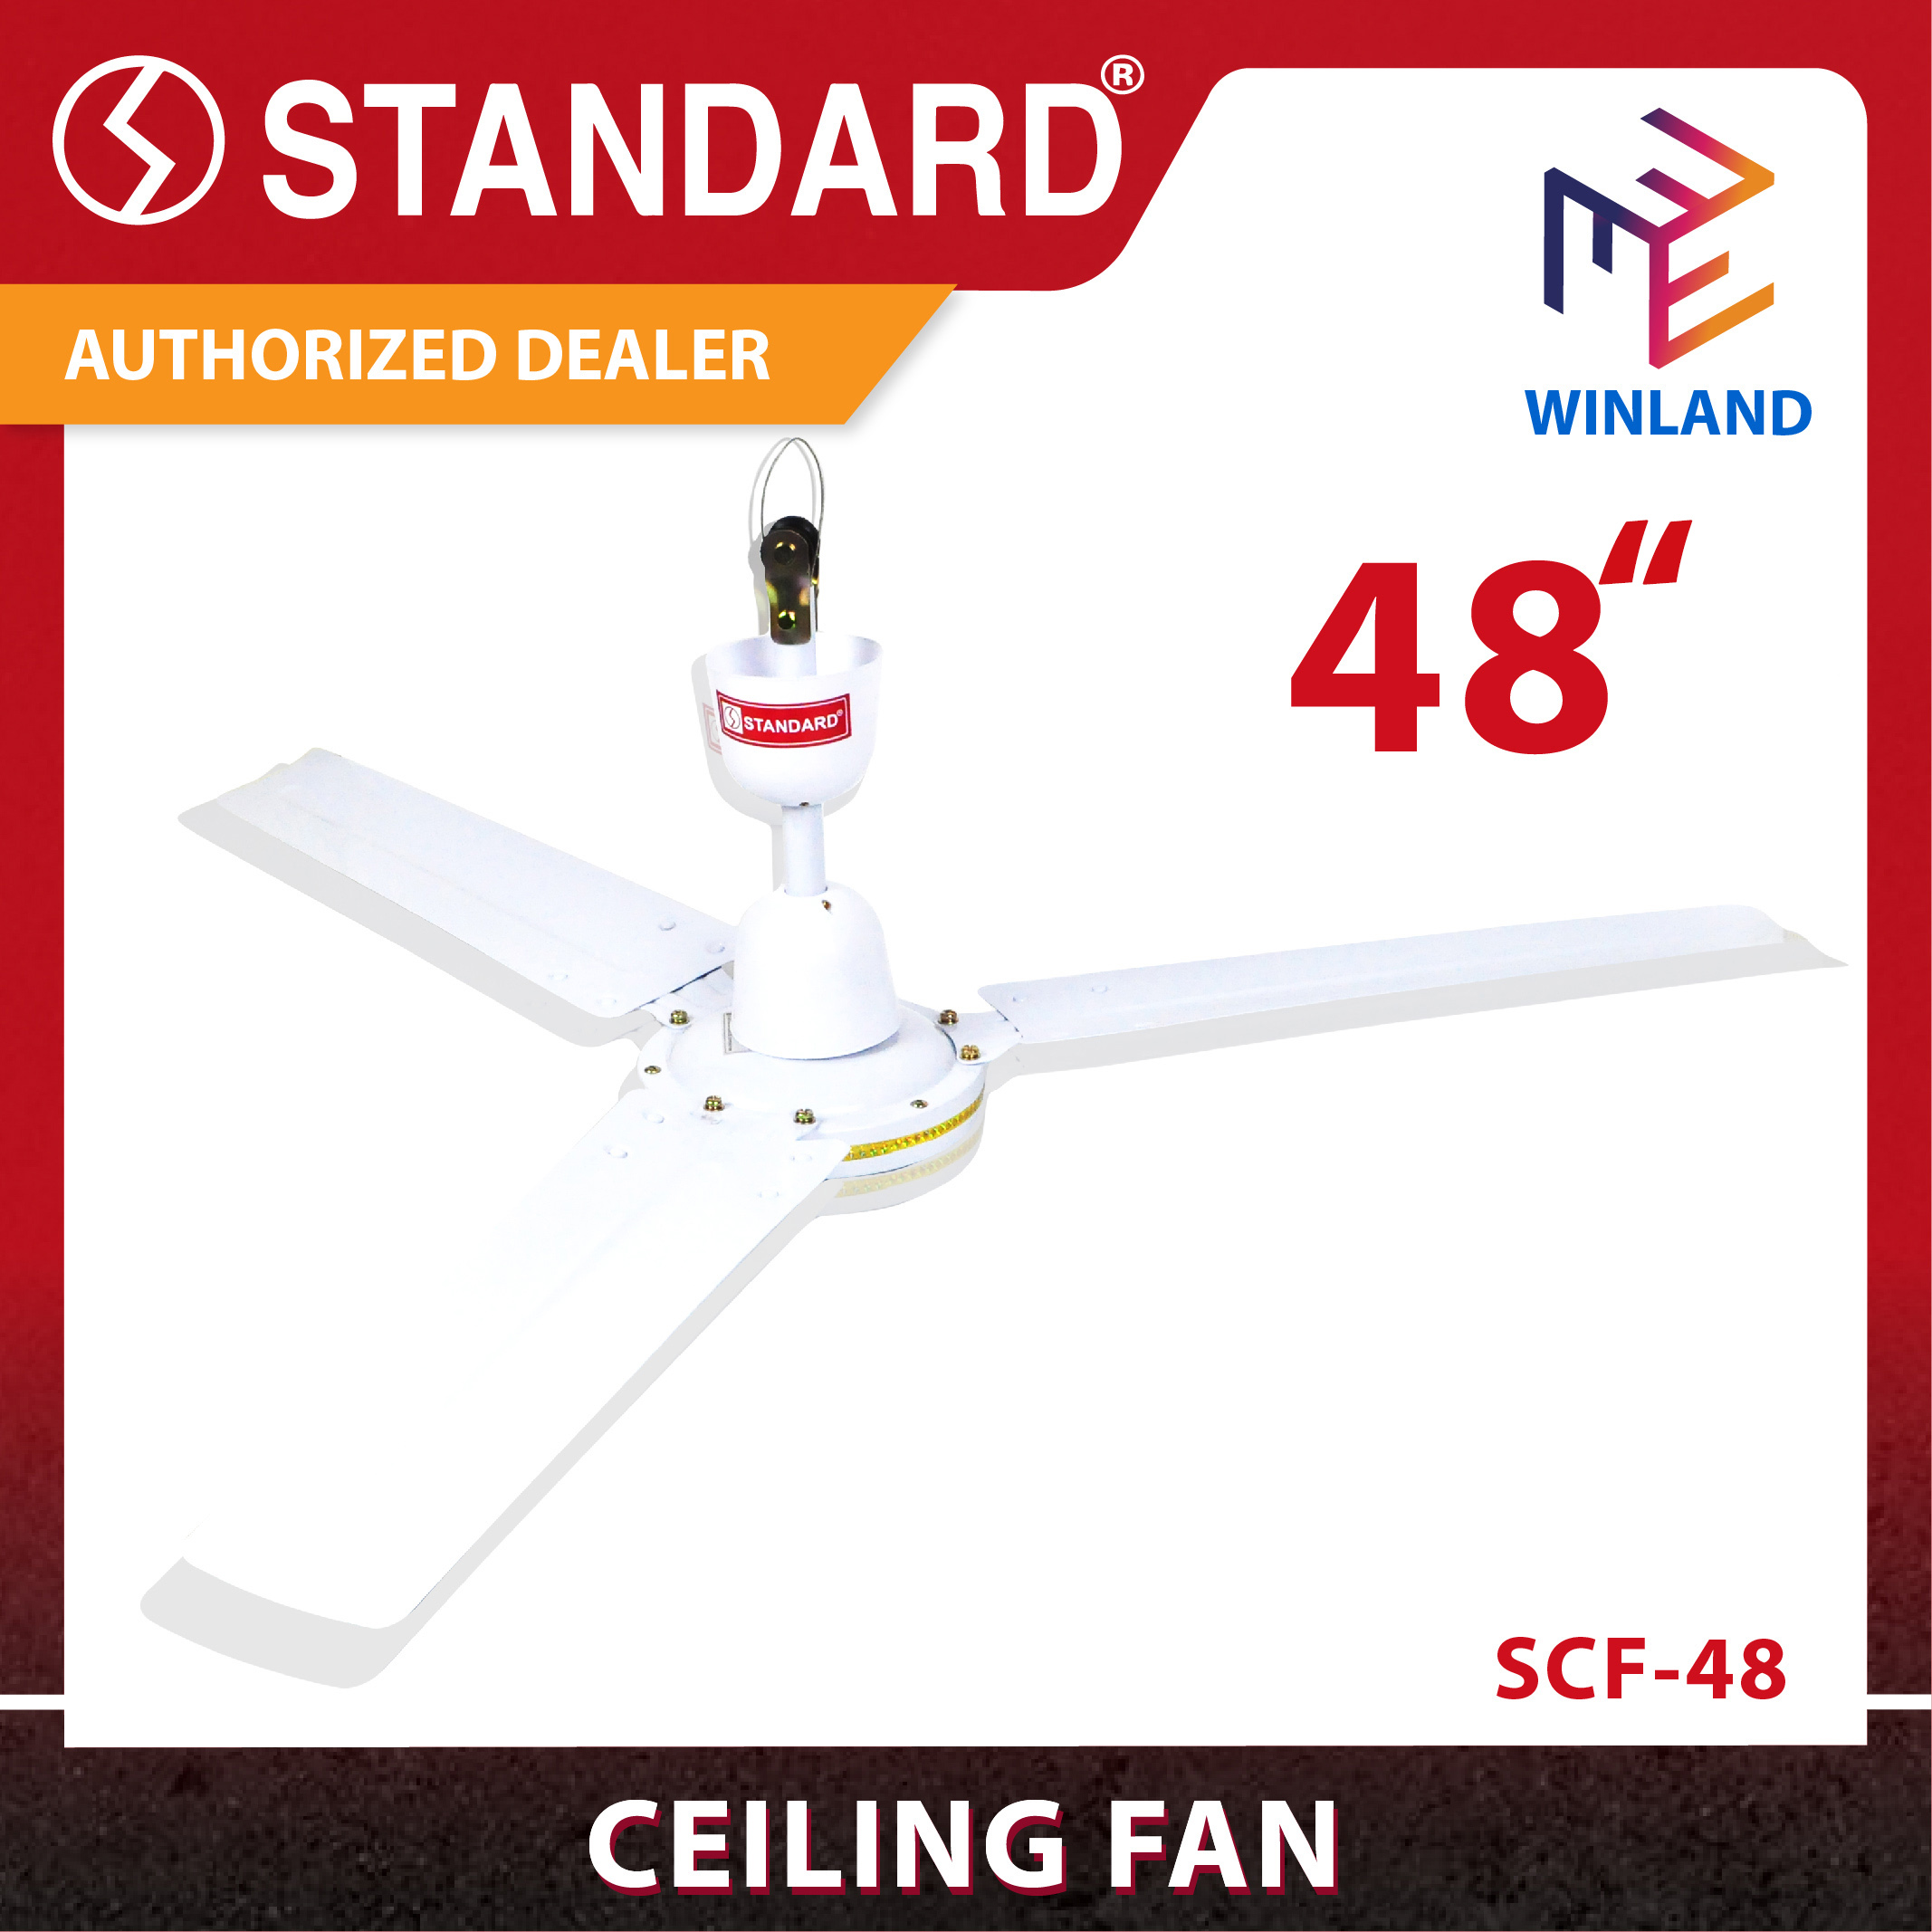 Winland 48" Electric Ceiling Fan